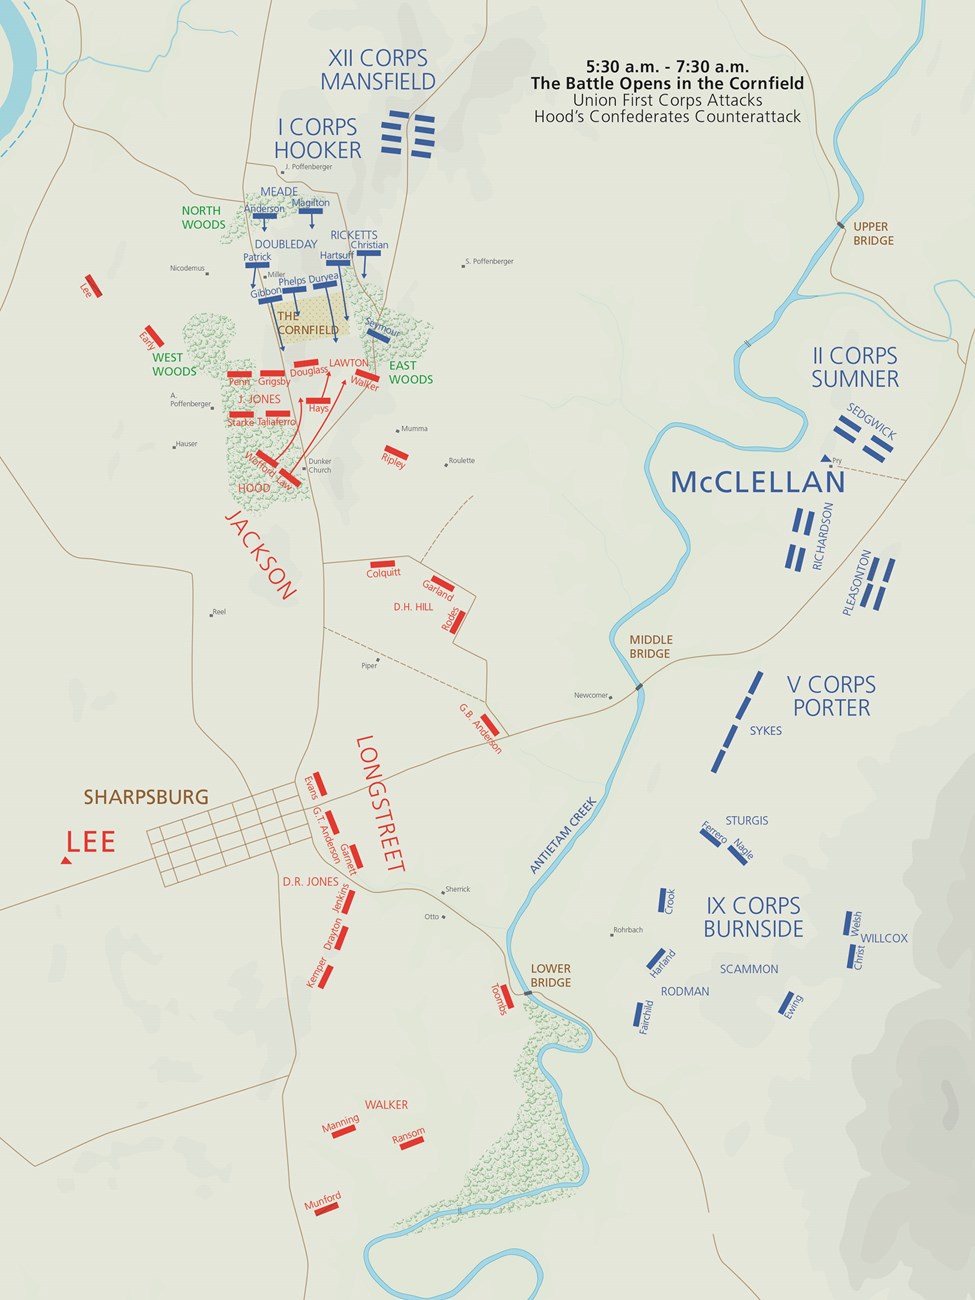 Antietam Battle Map 5:30-7:30 am